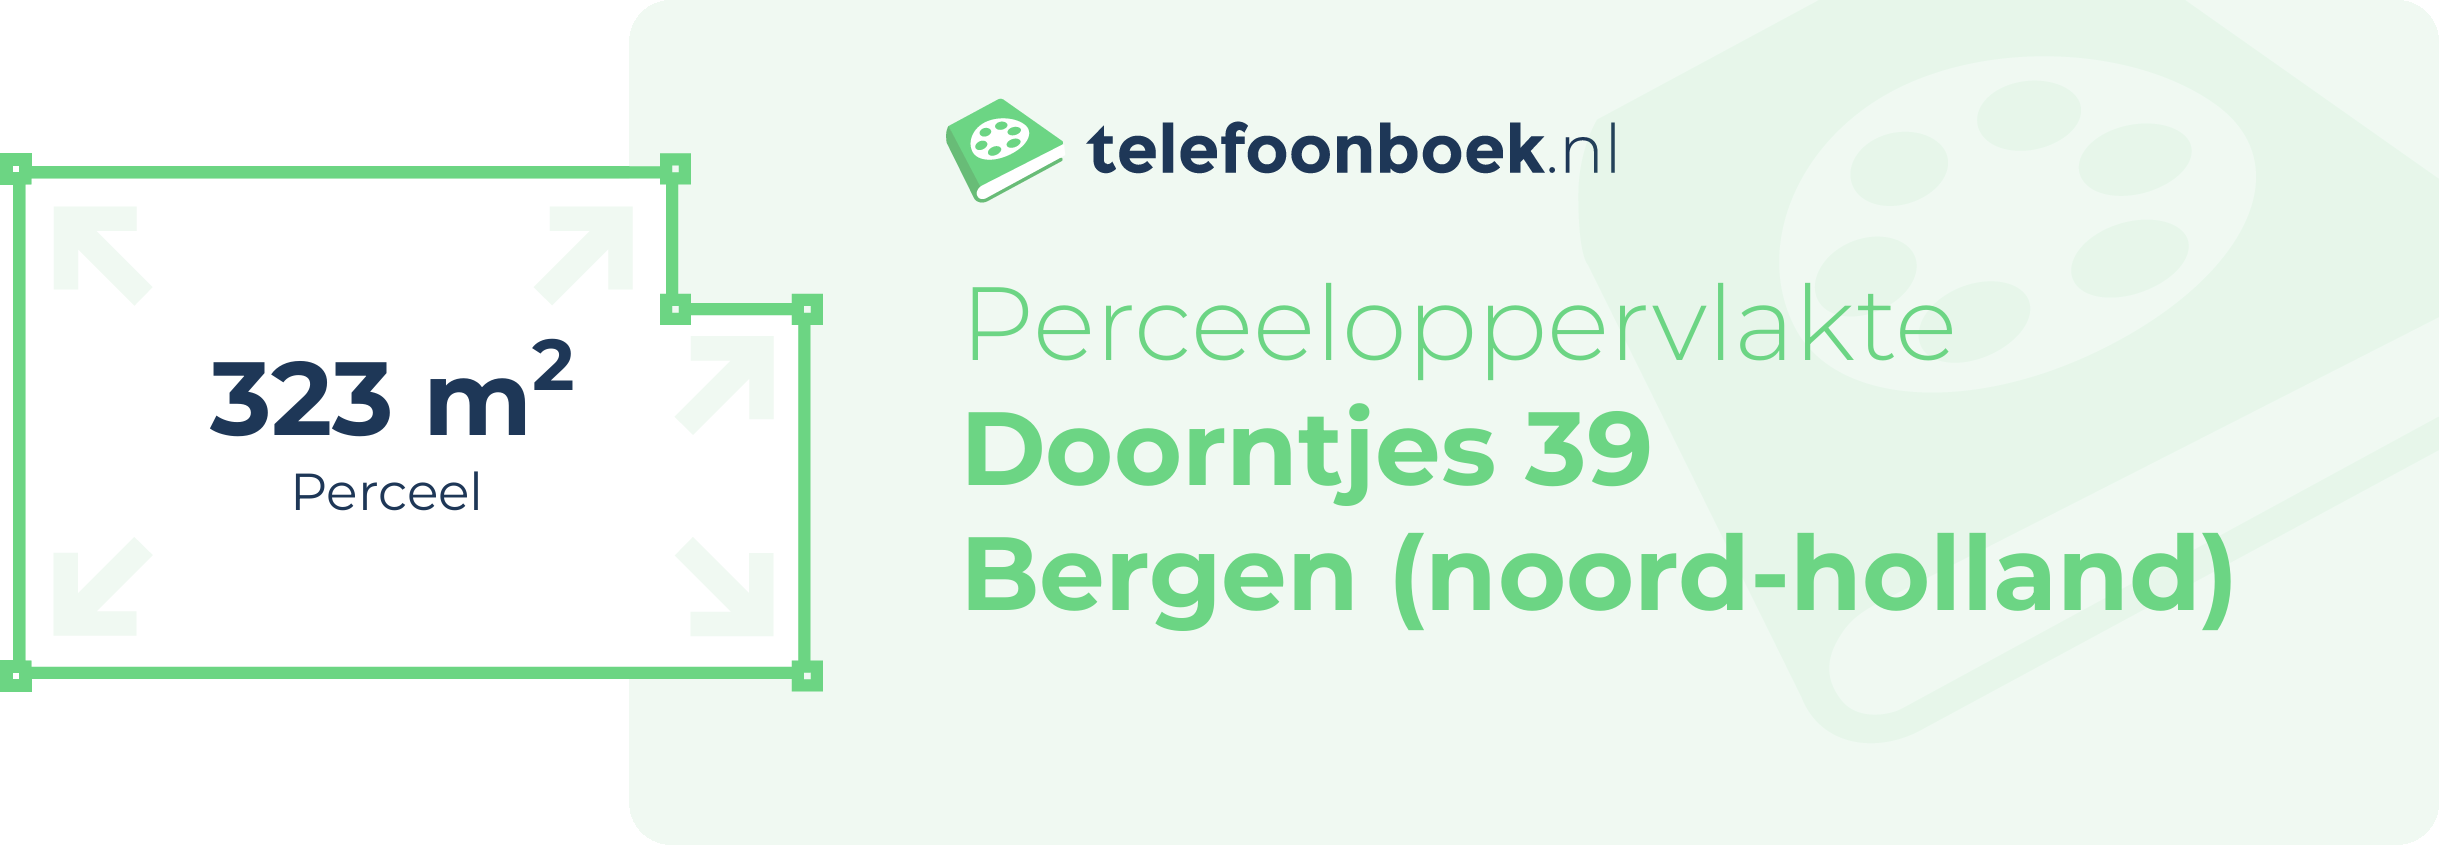 Perceeloppervlakte Doorntjes 39 Bergen (Noord-Holland)